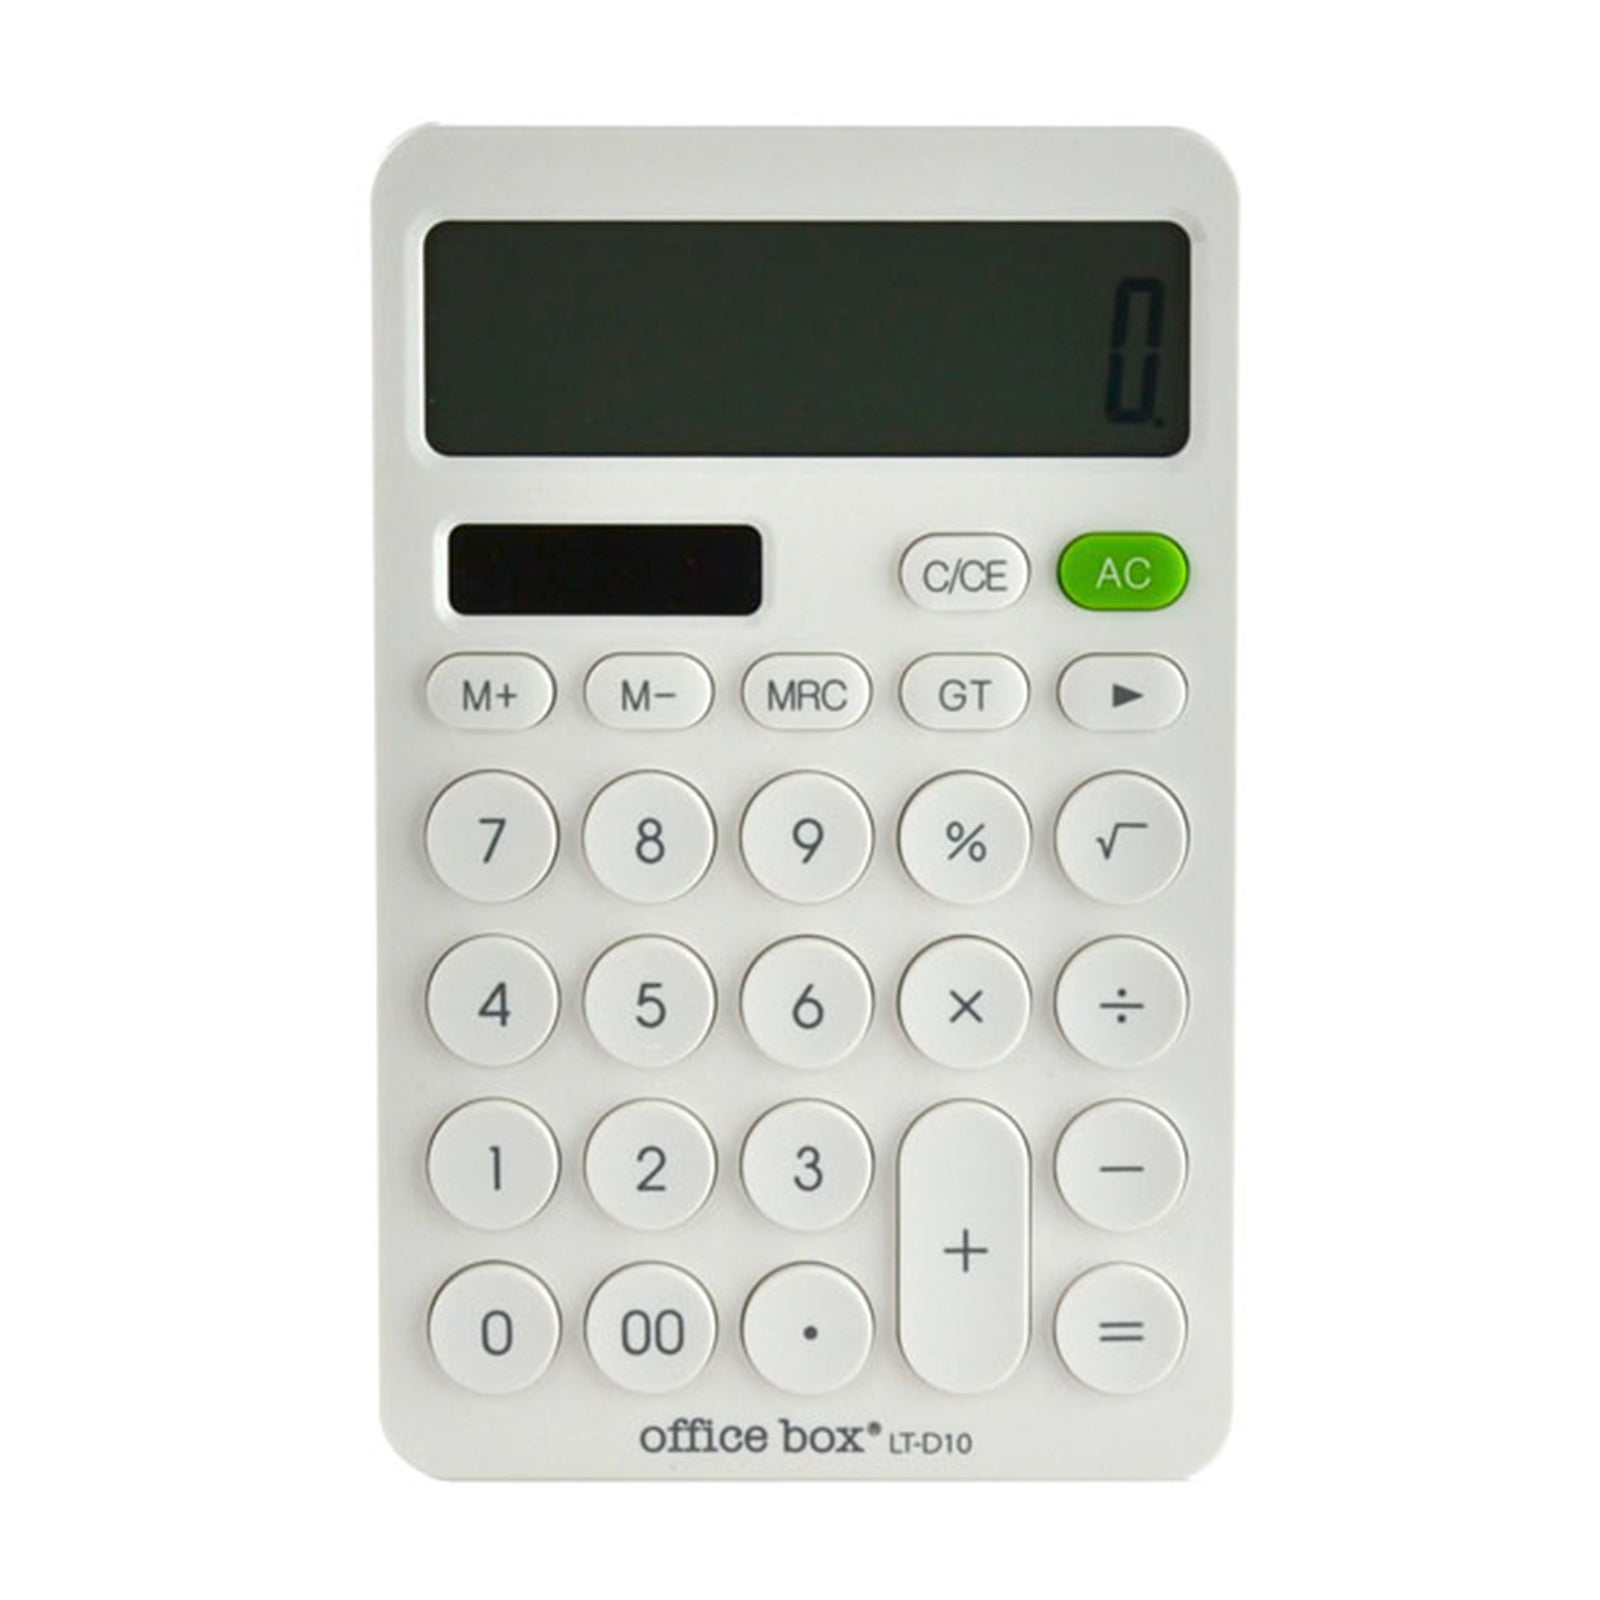 OFFICEBOX - Calculadora de Sobremesa de 12 Dígitos con Pantalla XL. Blanco